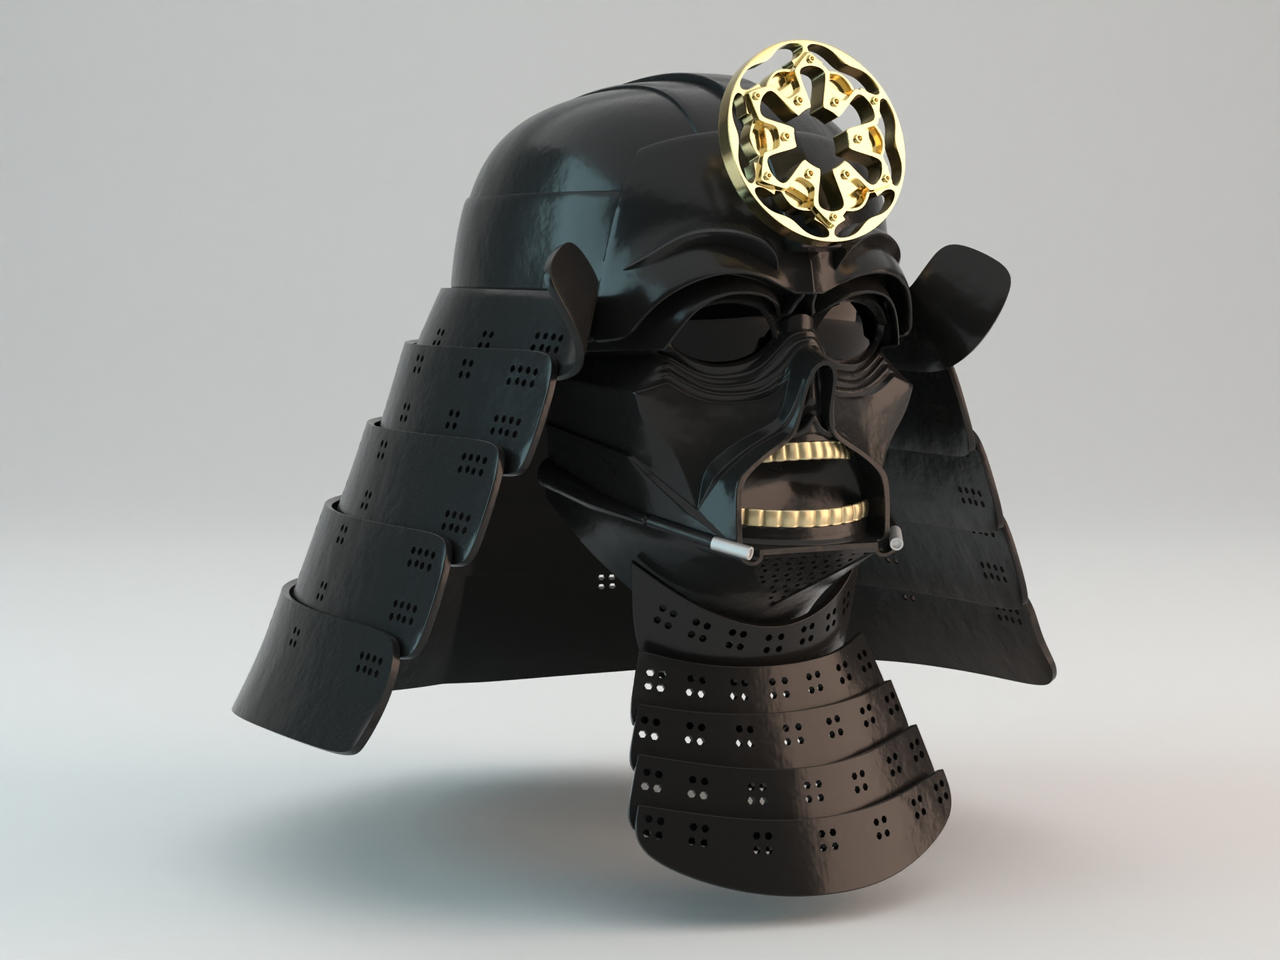 Samurai Darth Vader Helmet 3D print model by cgdoofus on DeviantArt